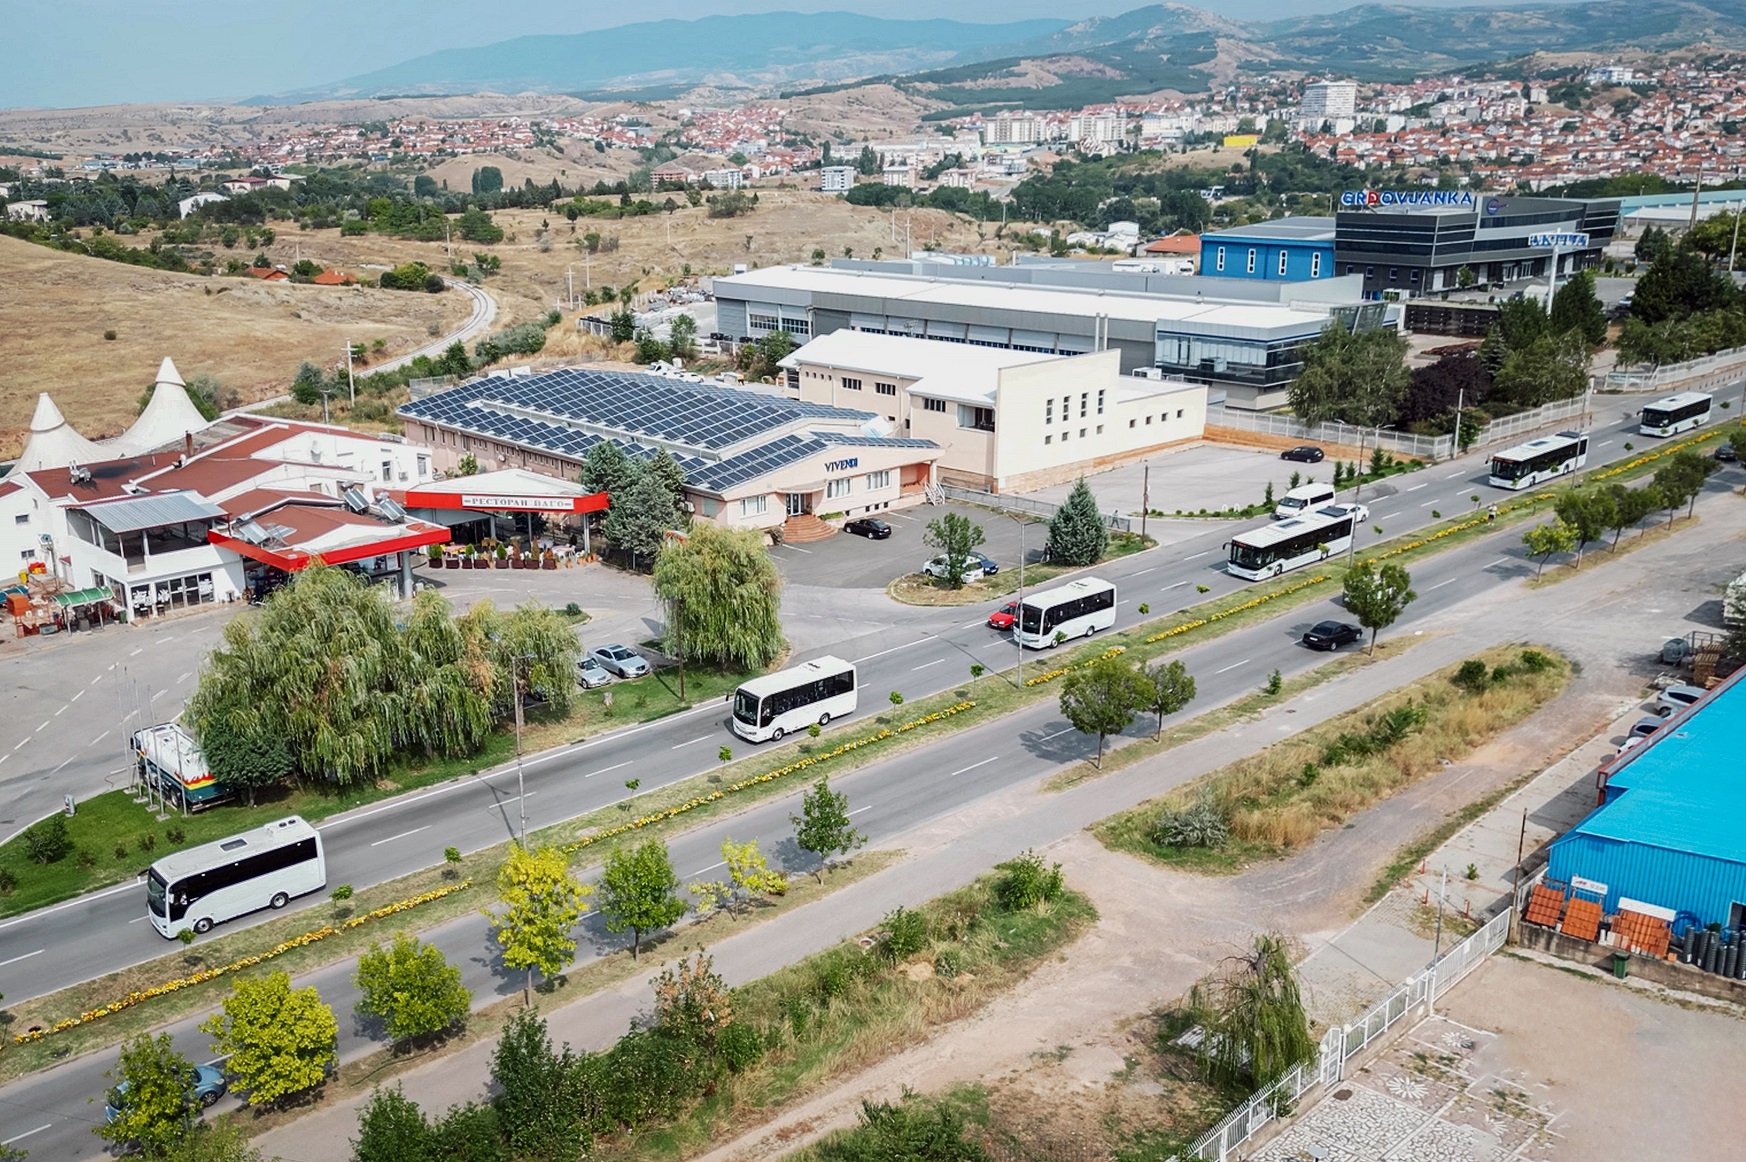 Anadolu Isuzu’dan Kuzey Makendonya’ya yeni araç sevkiyatı